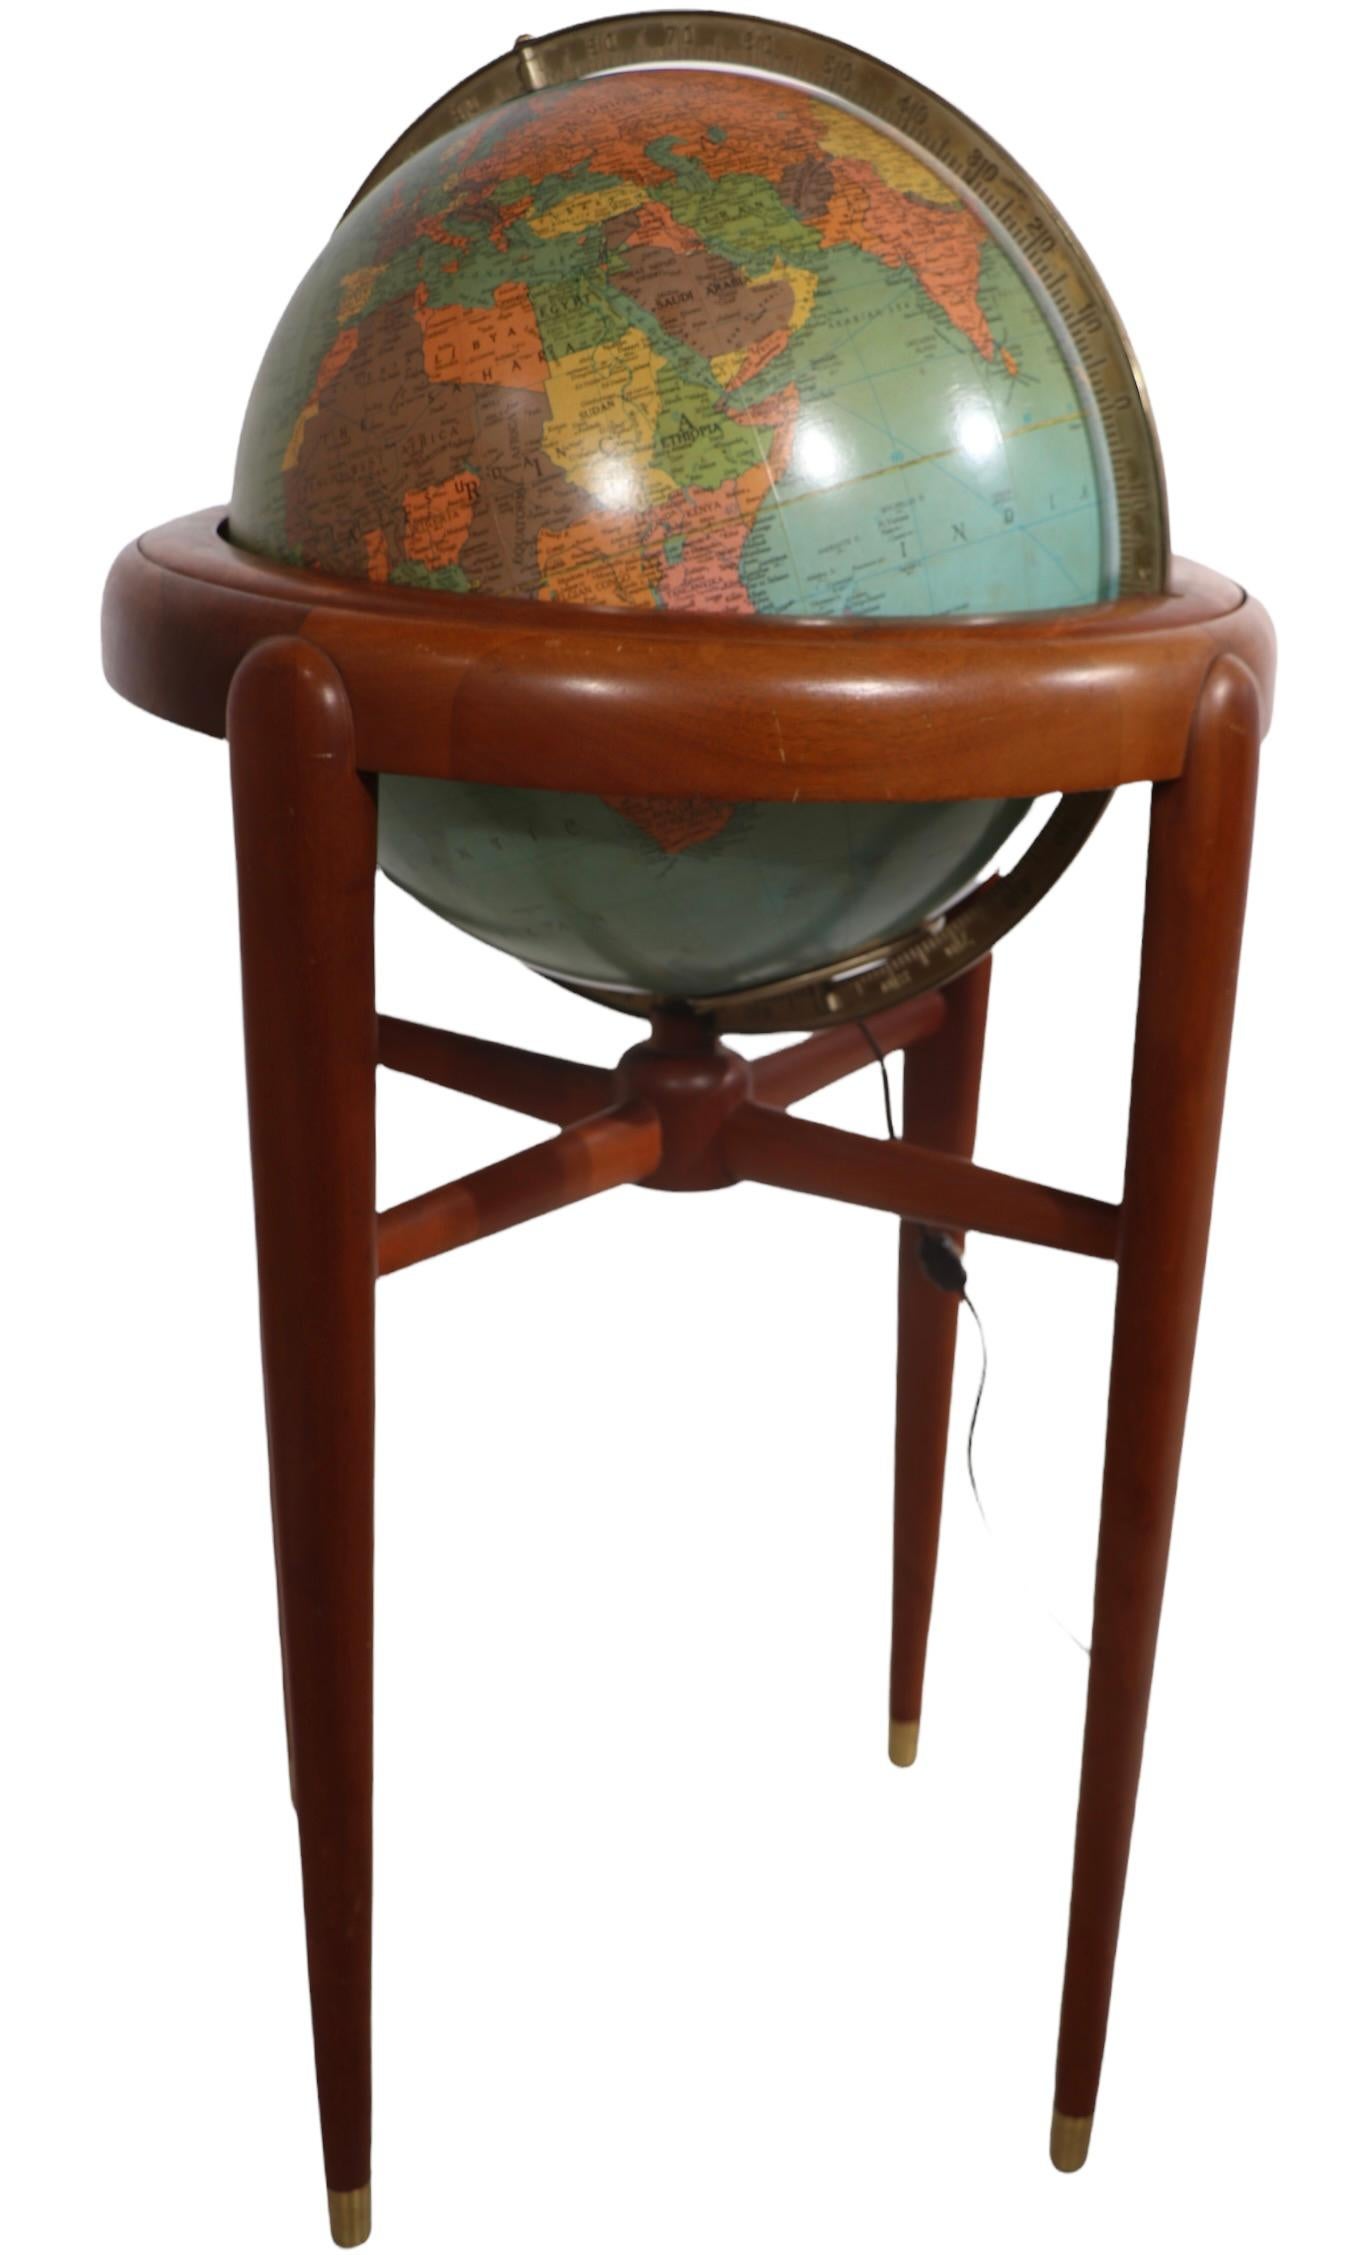 Außergewöhnlicher beleuchteter Bodenmodell-Globus von Replogle Globes Inc. Der Globus hat einen Durchmesser von 16 Zoll, verfügt über eine Innenbeleuchtung und besitzt einen massiven Mahagonirahmen. Dieses Exemplar ist in einem sehr guten,